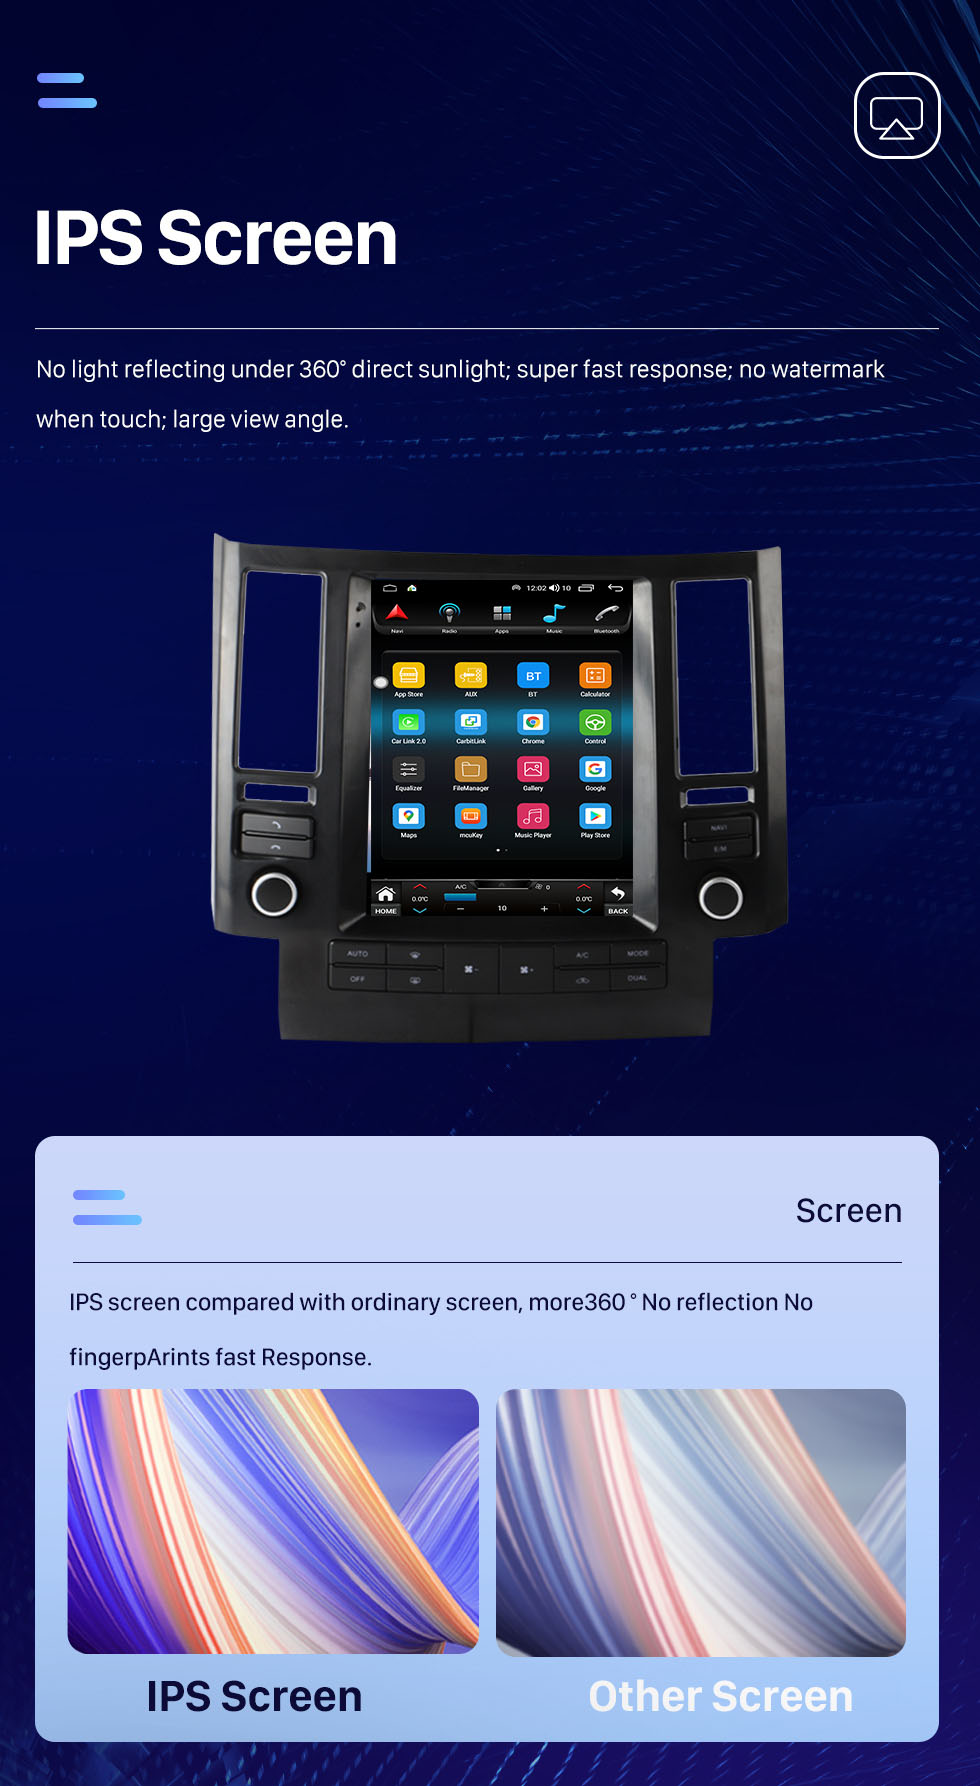 Seicane OEM 9,7-дюймовый Android 10.0 для 2003-2006 INFINITI FX35 FX45 Радио GPS-навигационная система с сенсорным экраном HD Поддержка Bluetooth Carplay OBD2 DVR TPMS